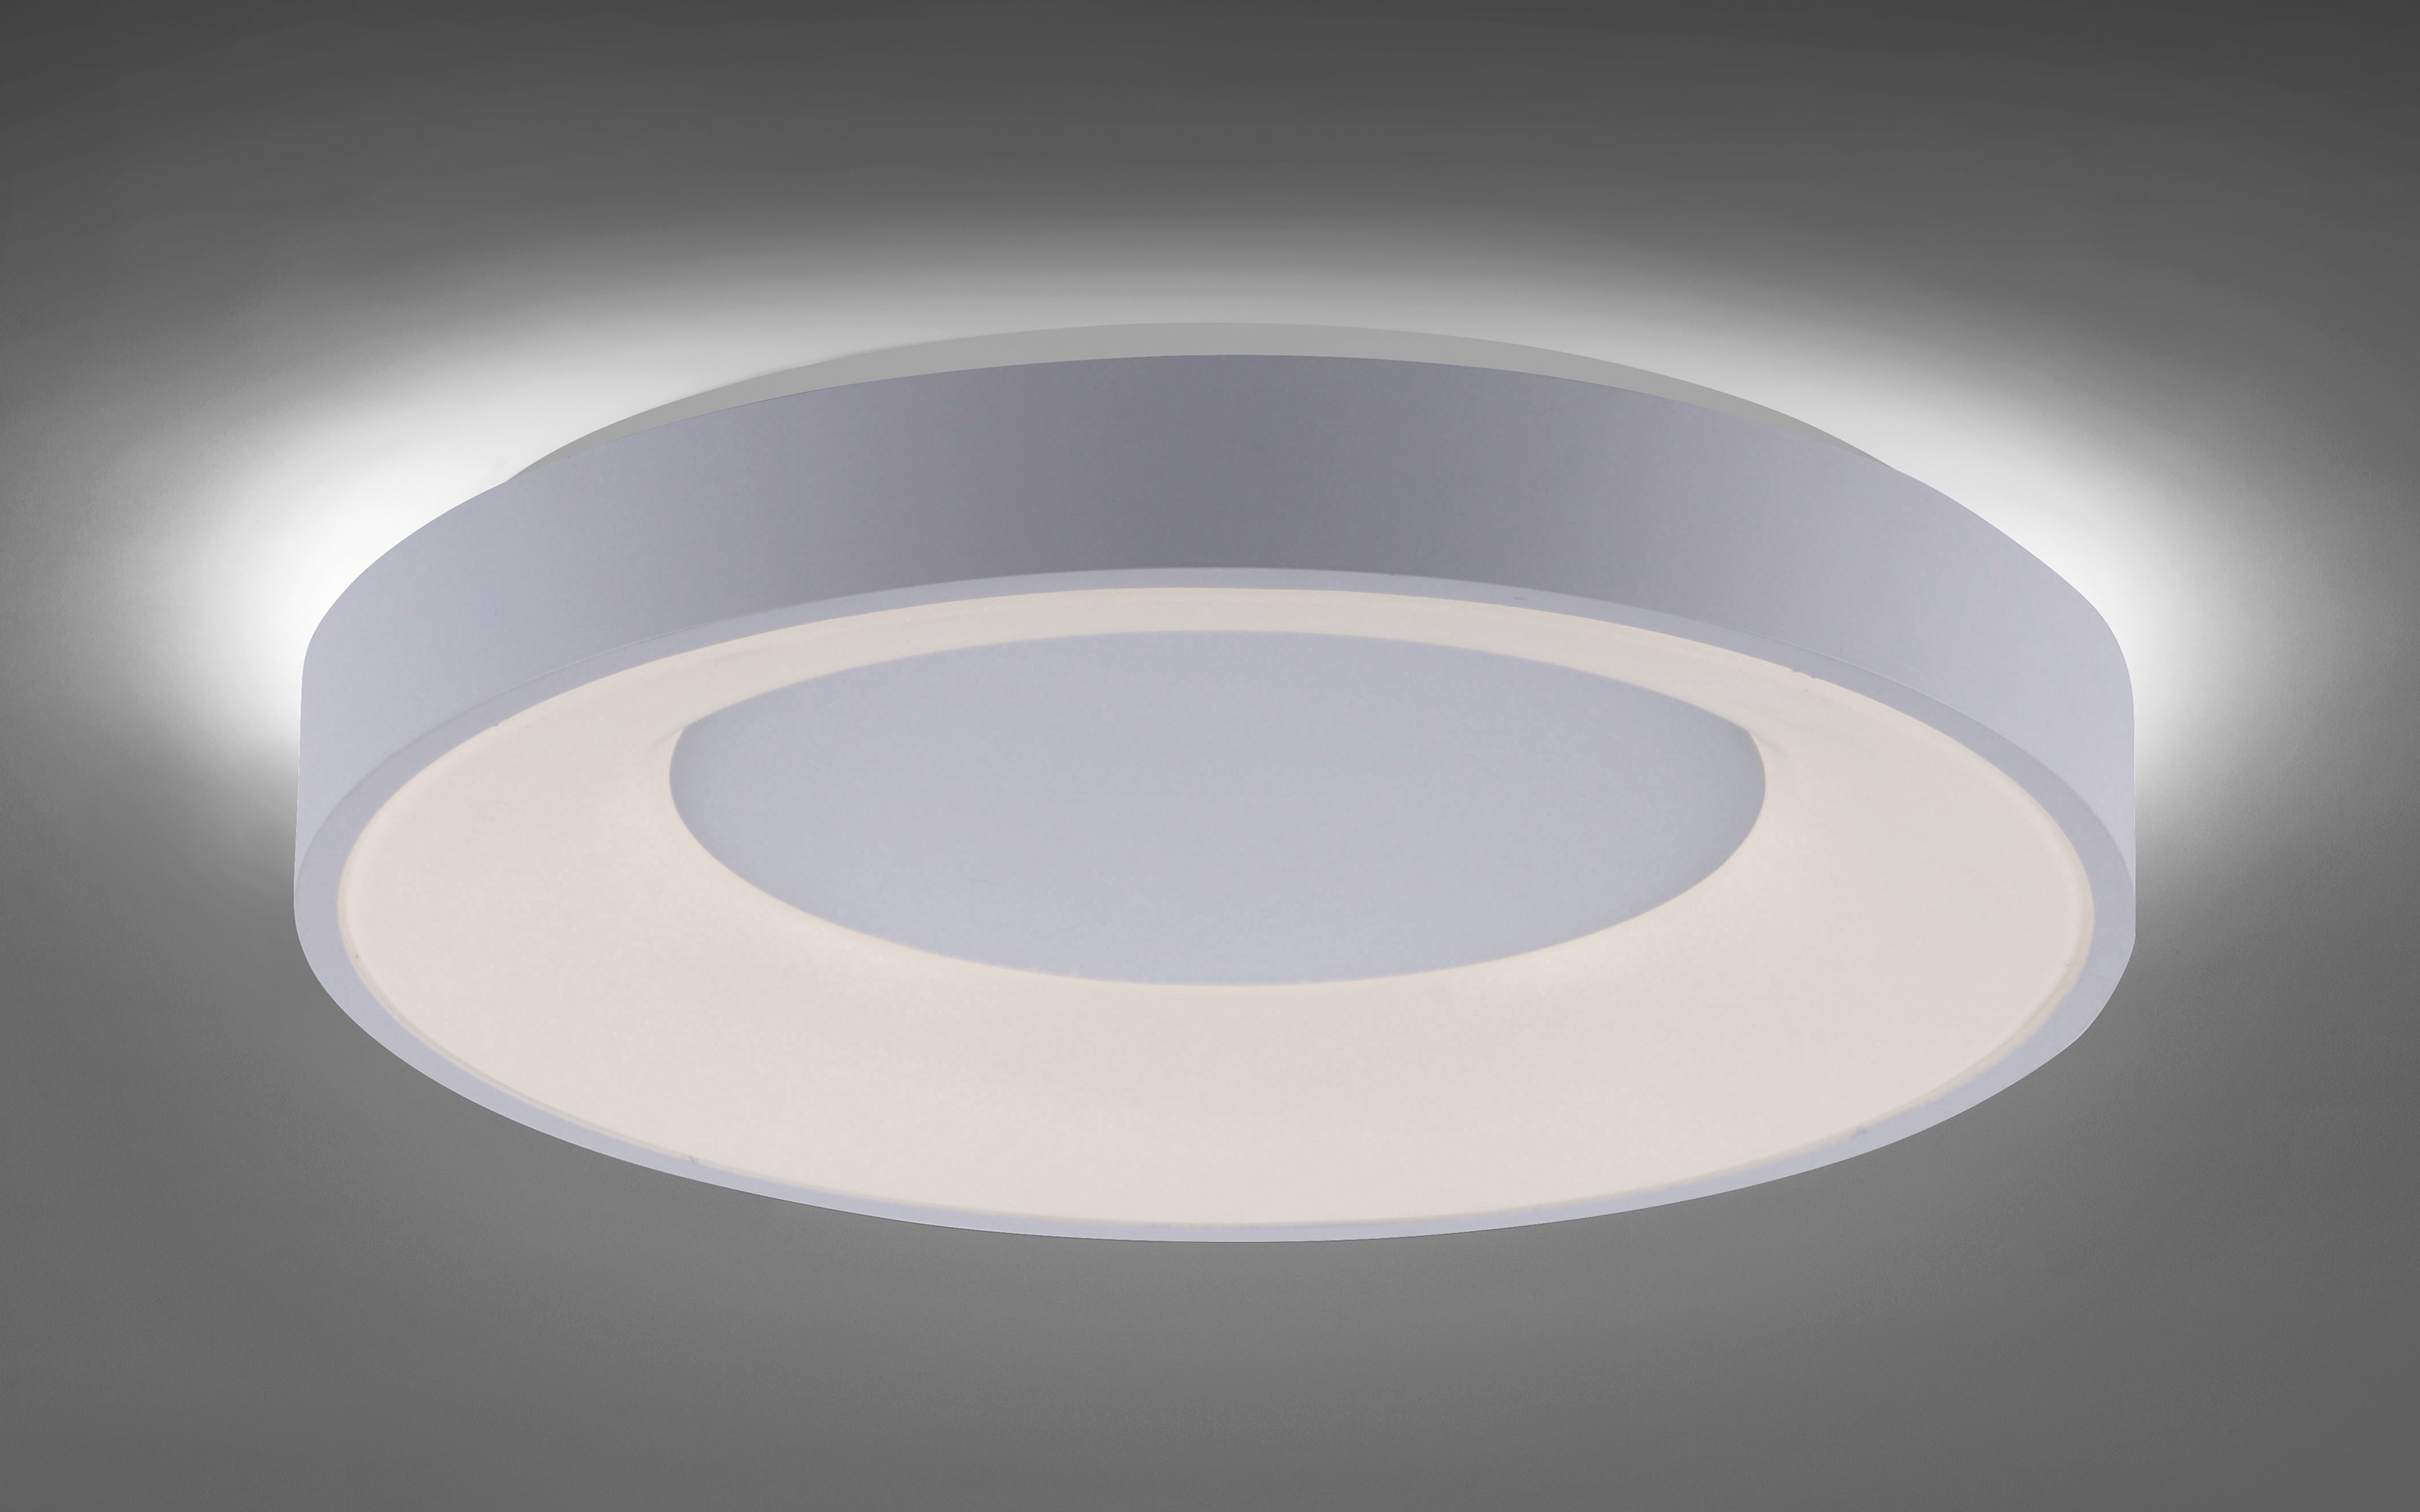 LED-Deckenleuchte Anika, weiß, 48 cm